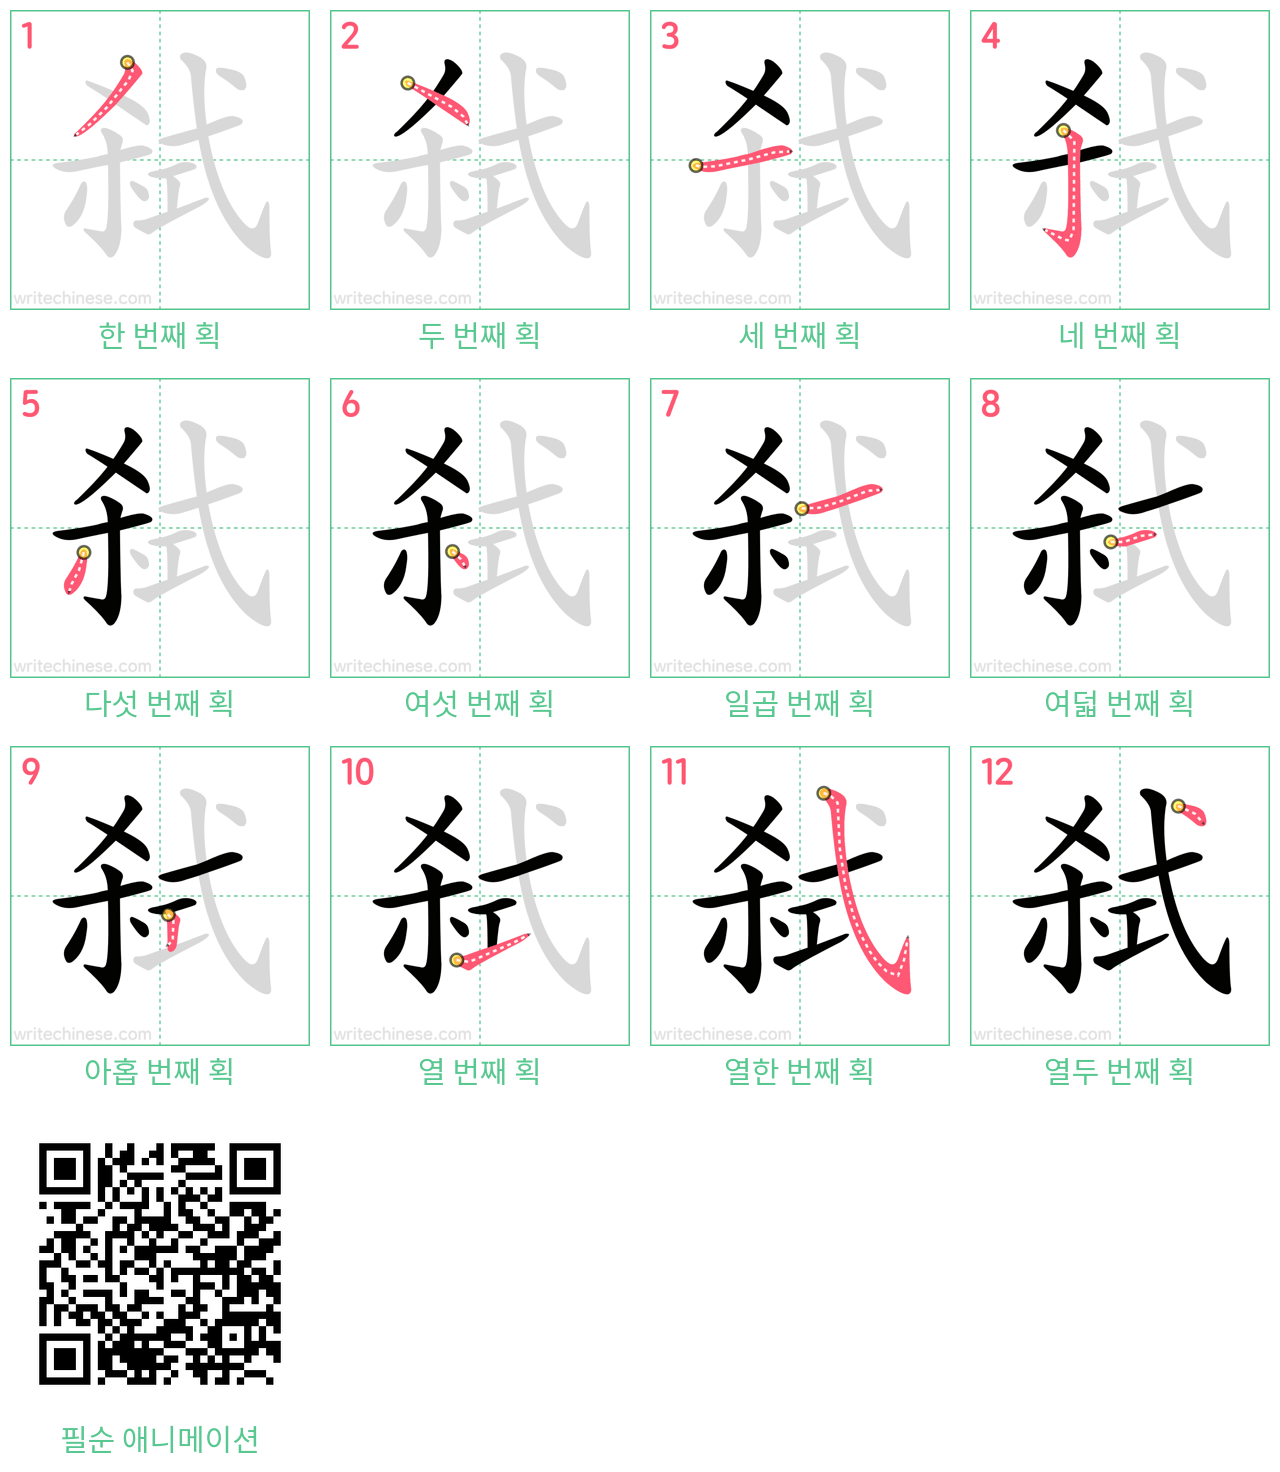 弑 step-by-step stroke order diagrams